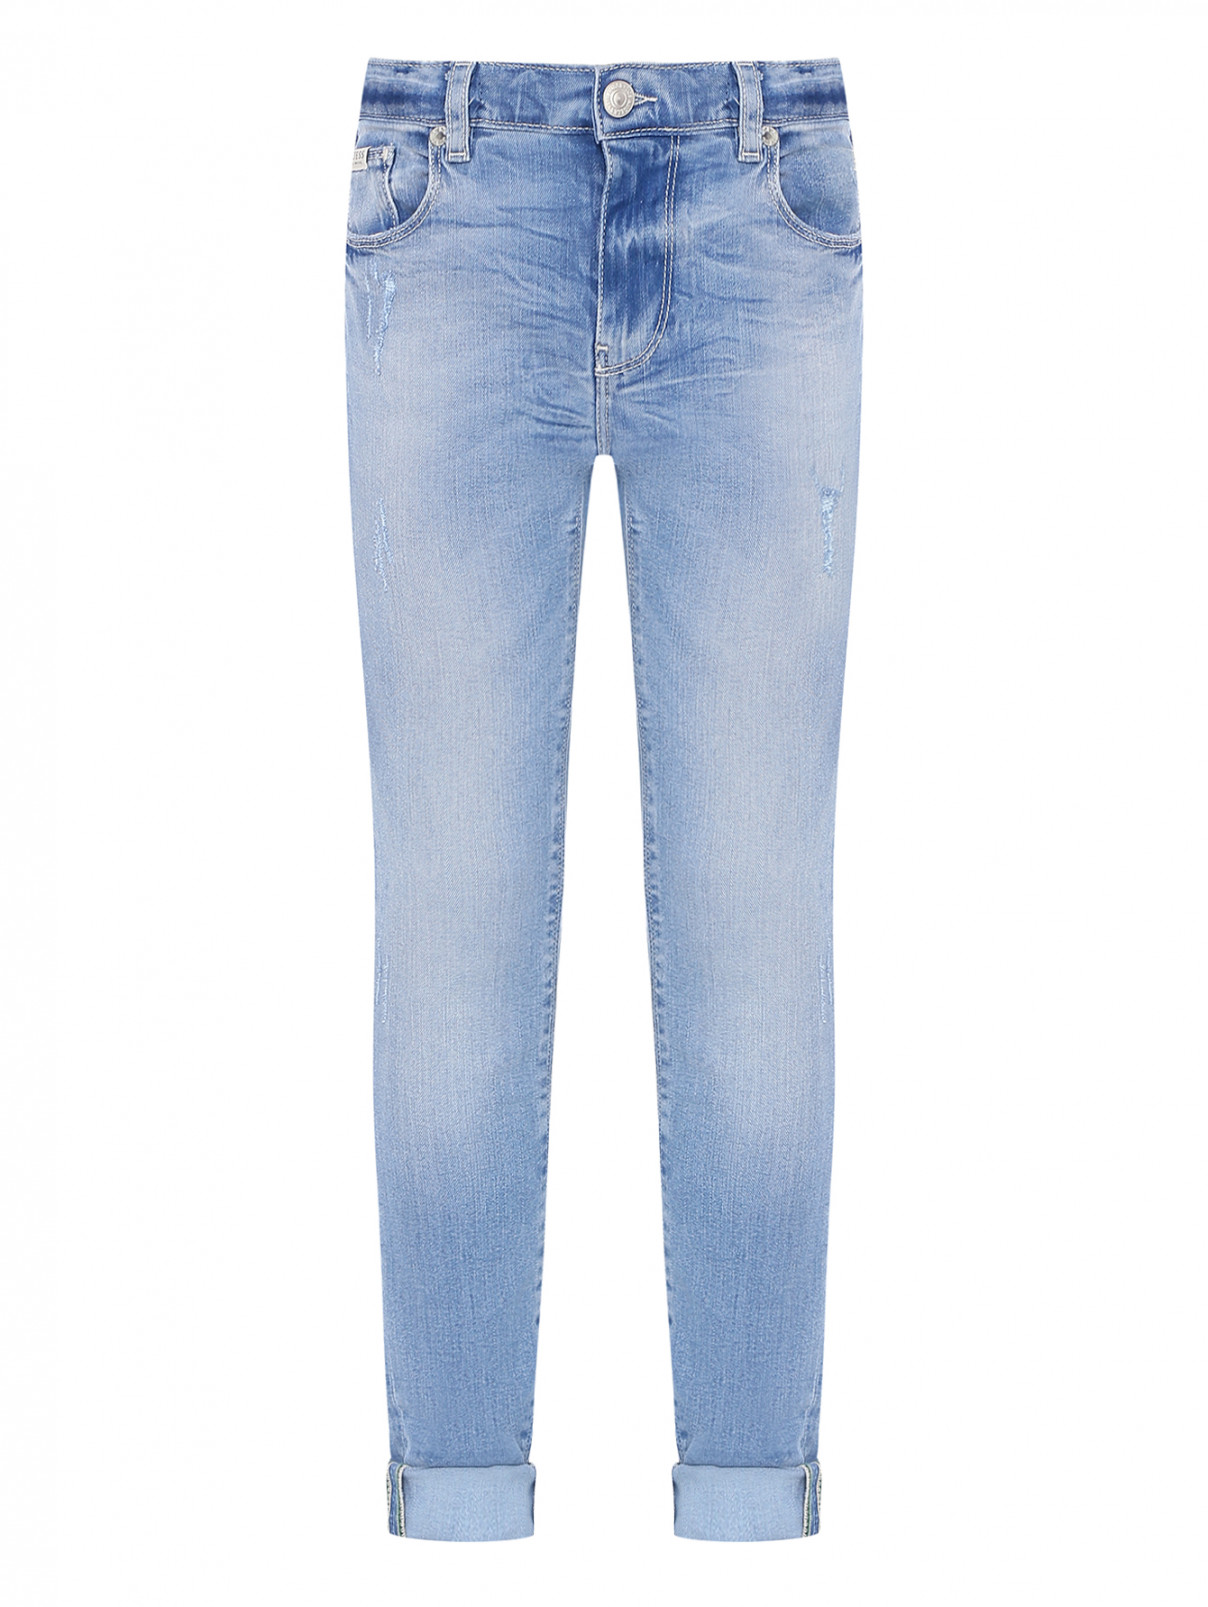 Узкие джинсы с "рваным эффектом" Guess Kids  –  Общий вид  – Цвет:  Синий